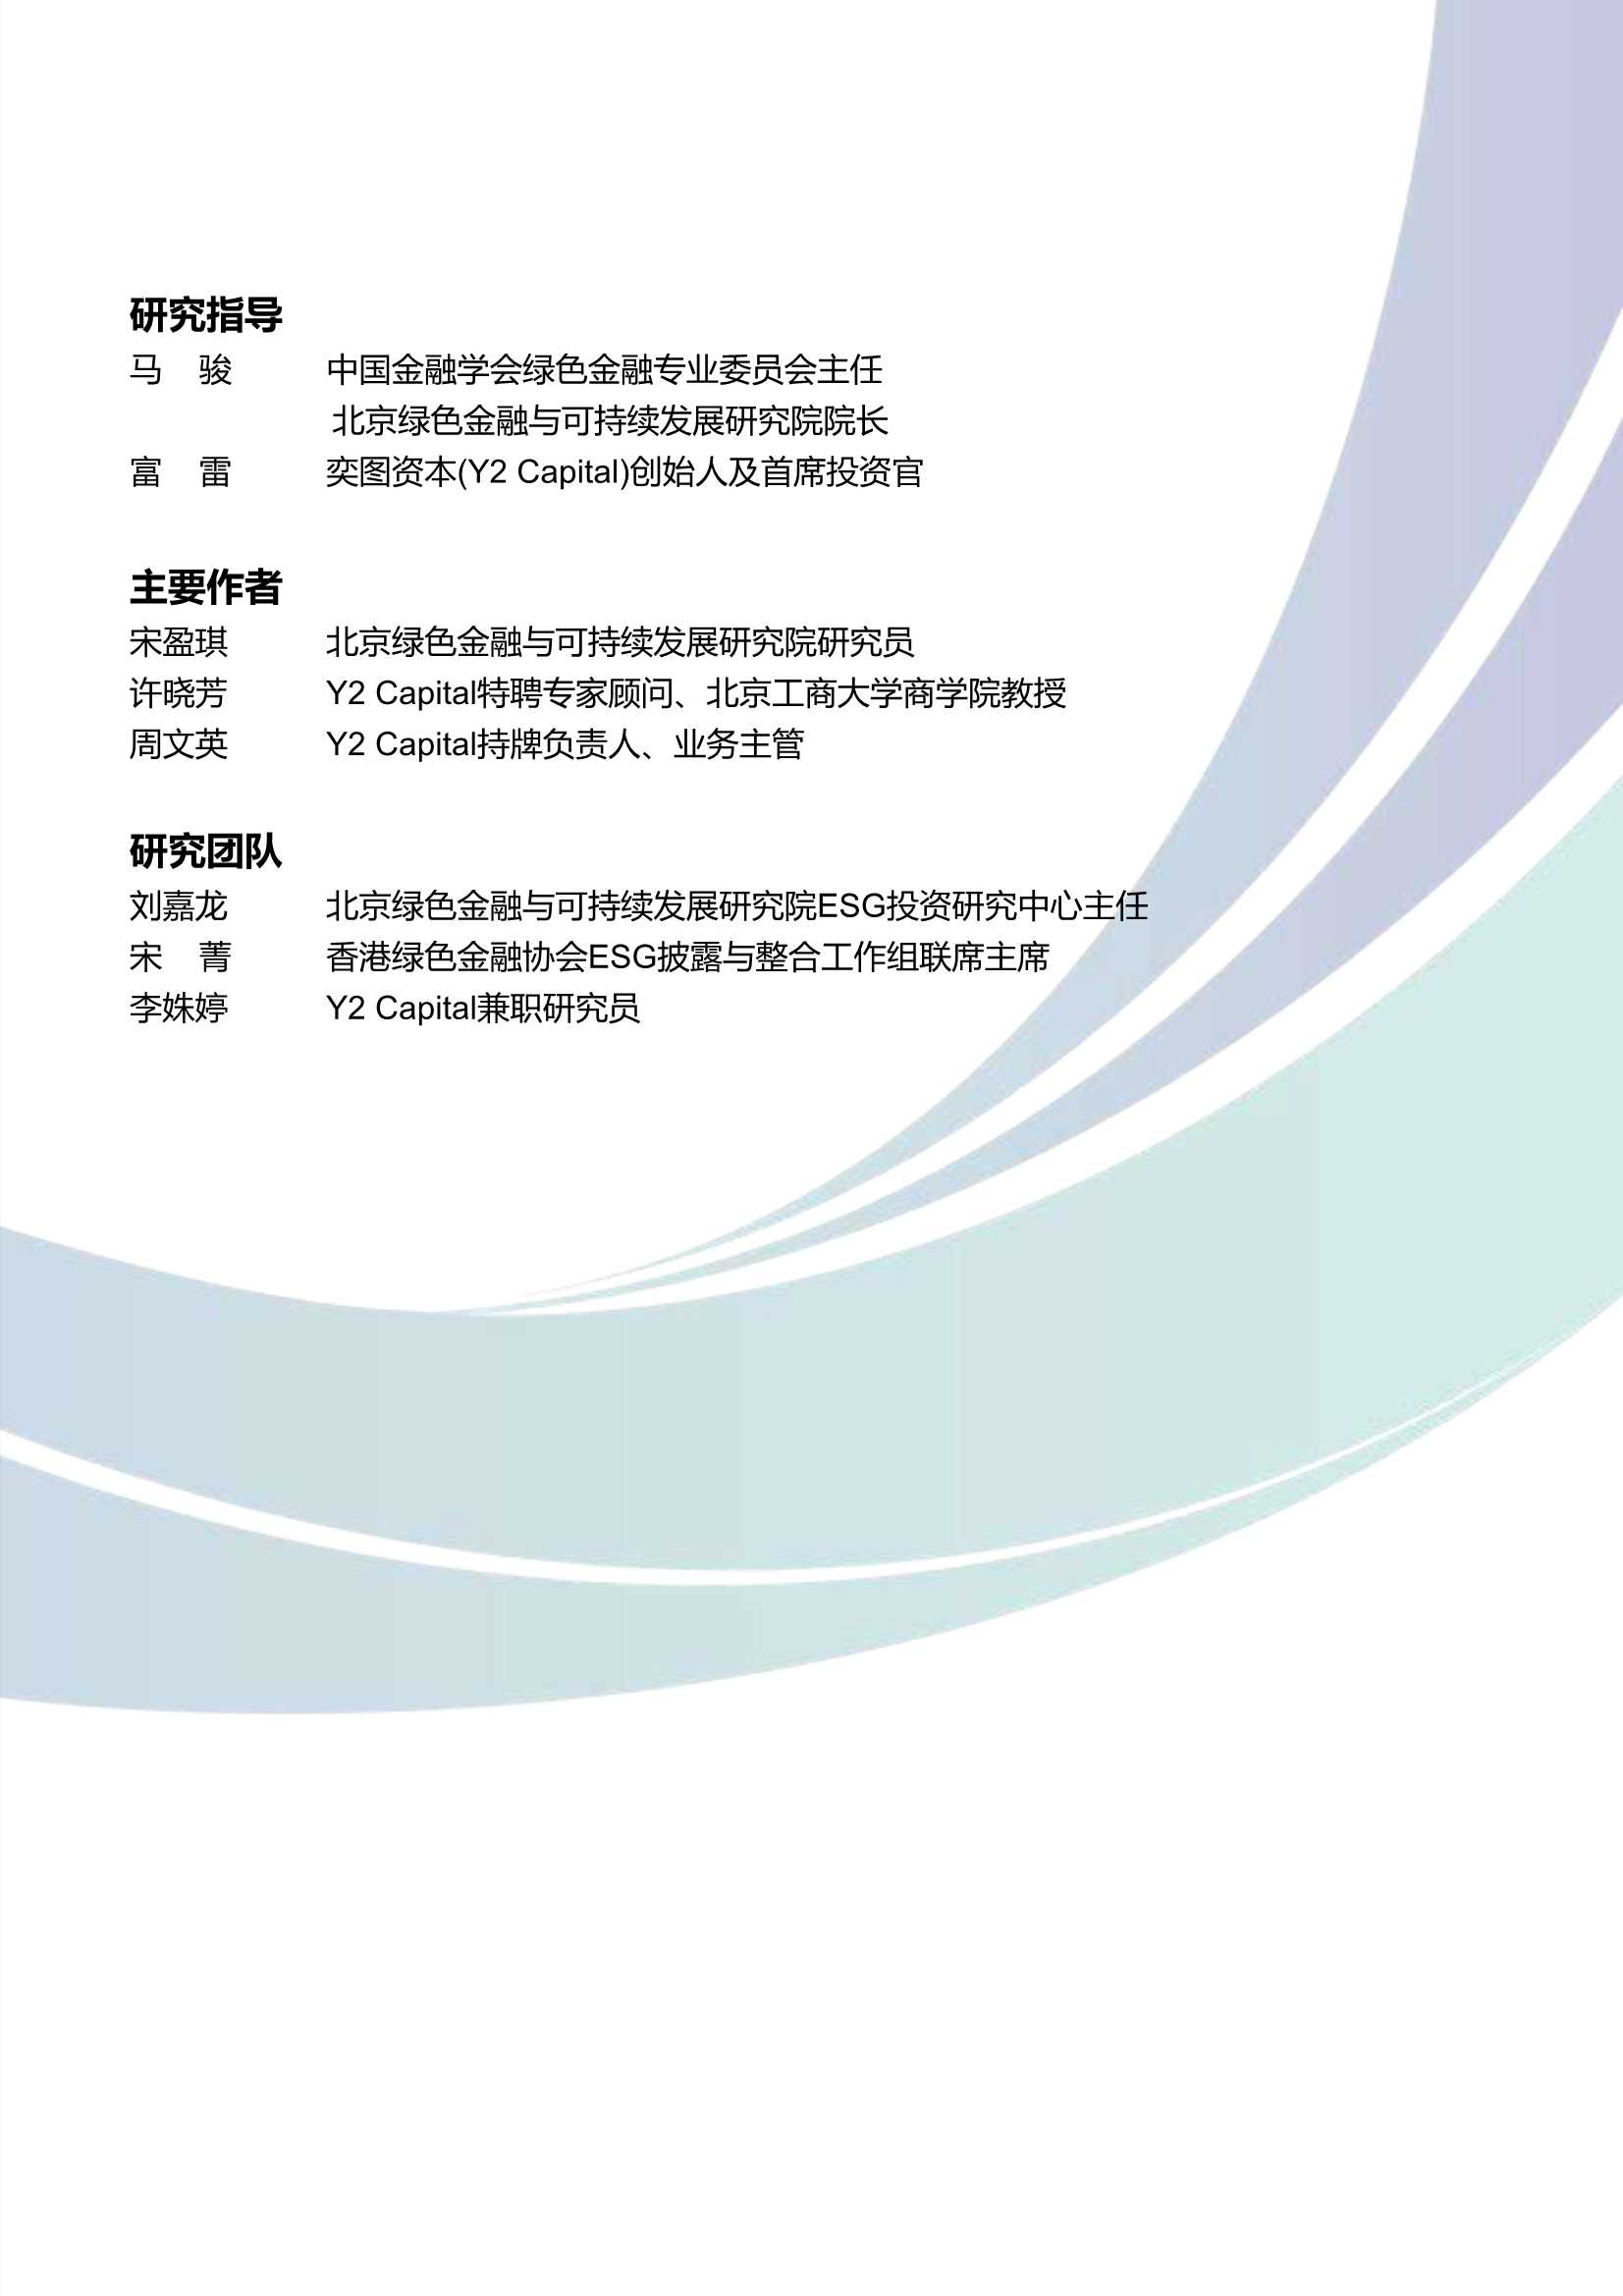 北京绿色金融与可持续发展研究所-中国ESG投资尽责管理之探索-2022.01-32页